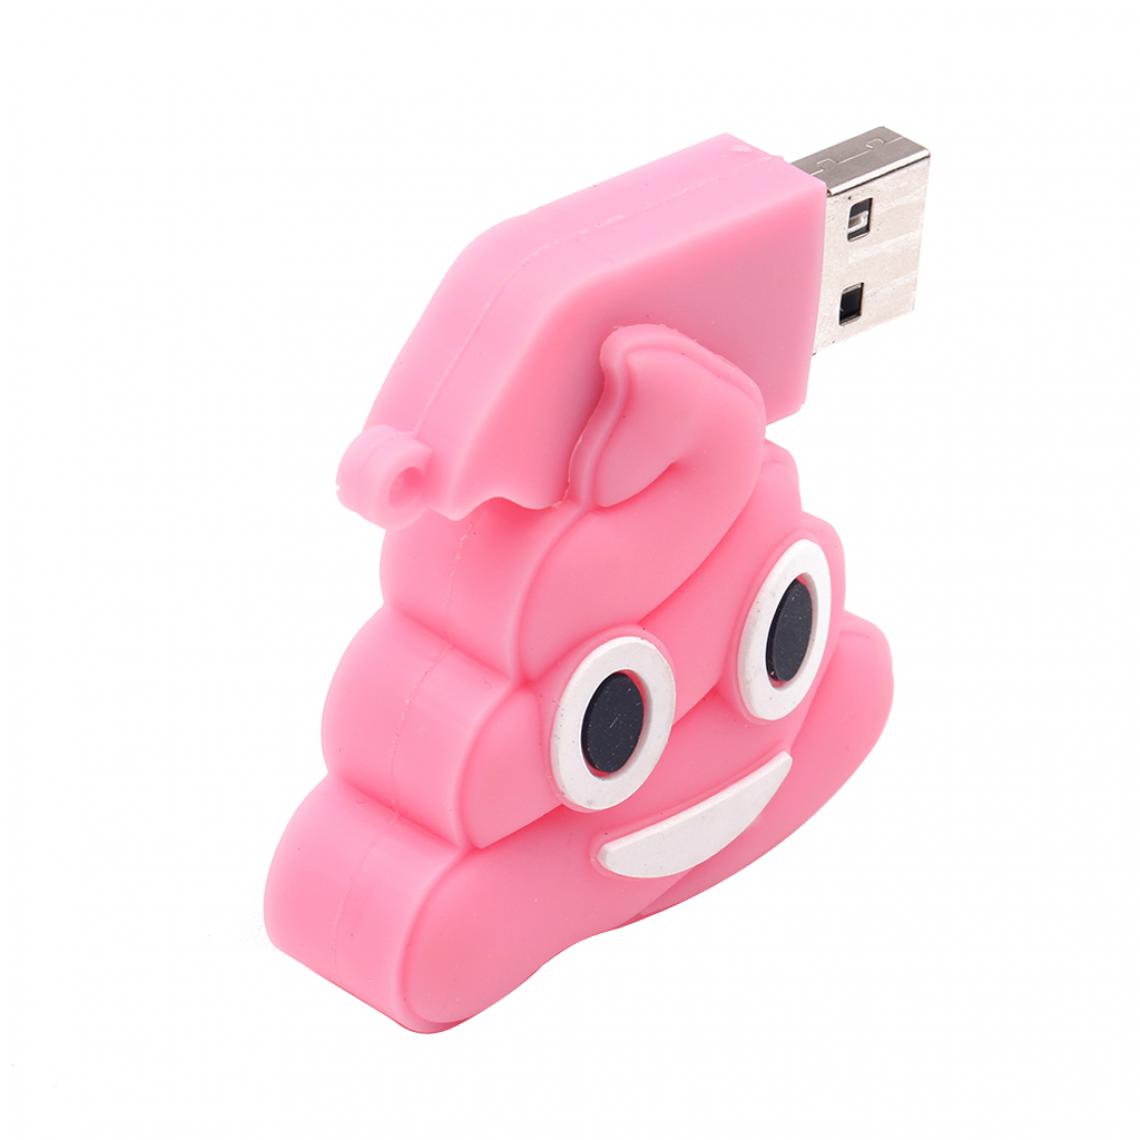 marque generique - usb flash drive memory stick thumb pendrive pink cute creative design 32gb - Clés USB